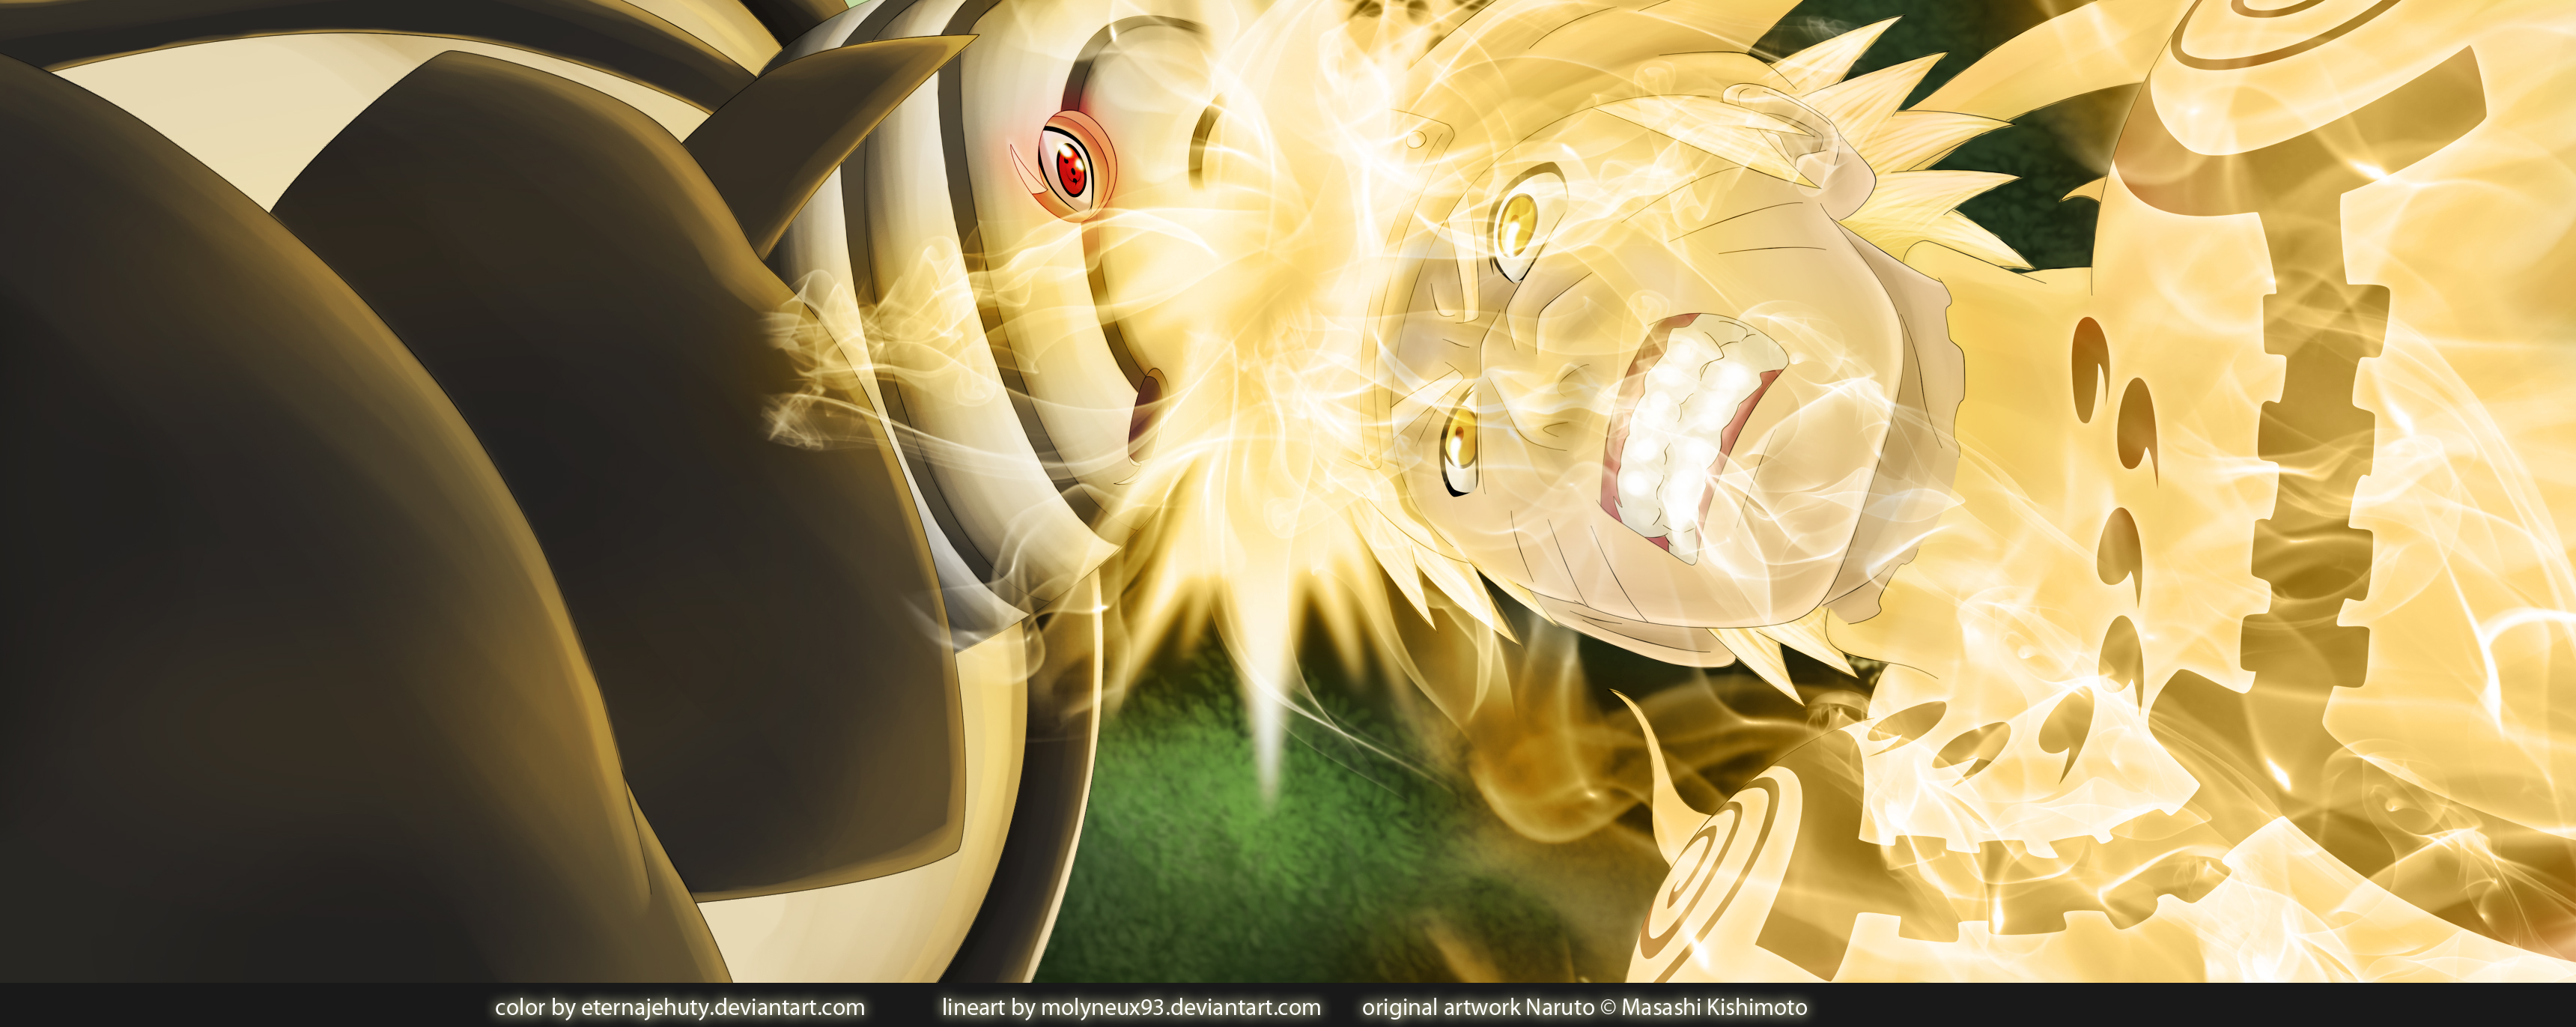 Naruto Vs Madara HD Wallpaper 1080p Jpg